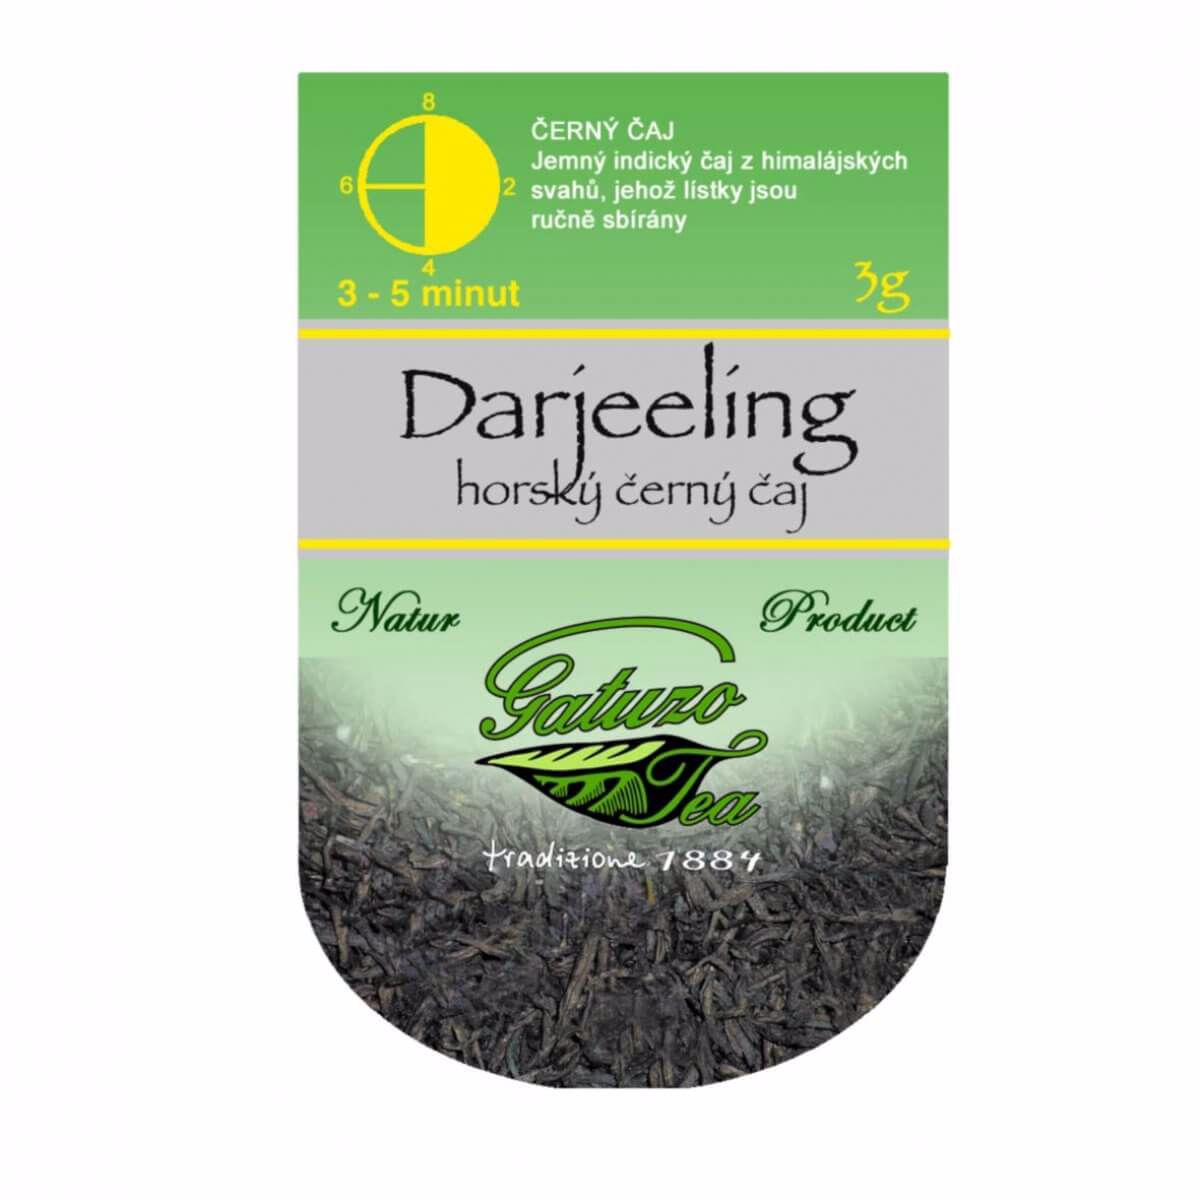 Čaj Gatuzo Tea -  Darjeeling